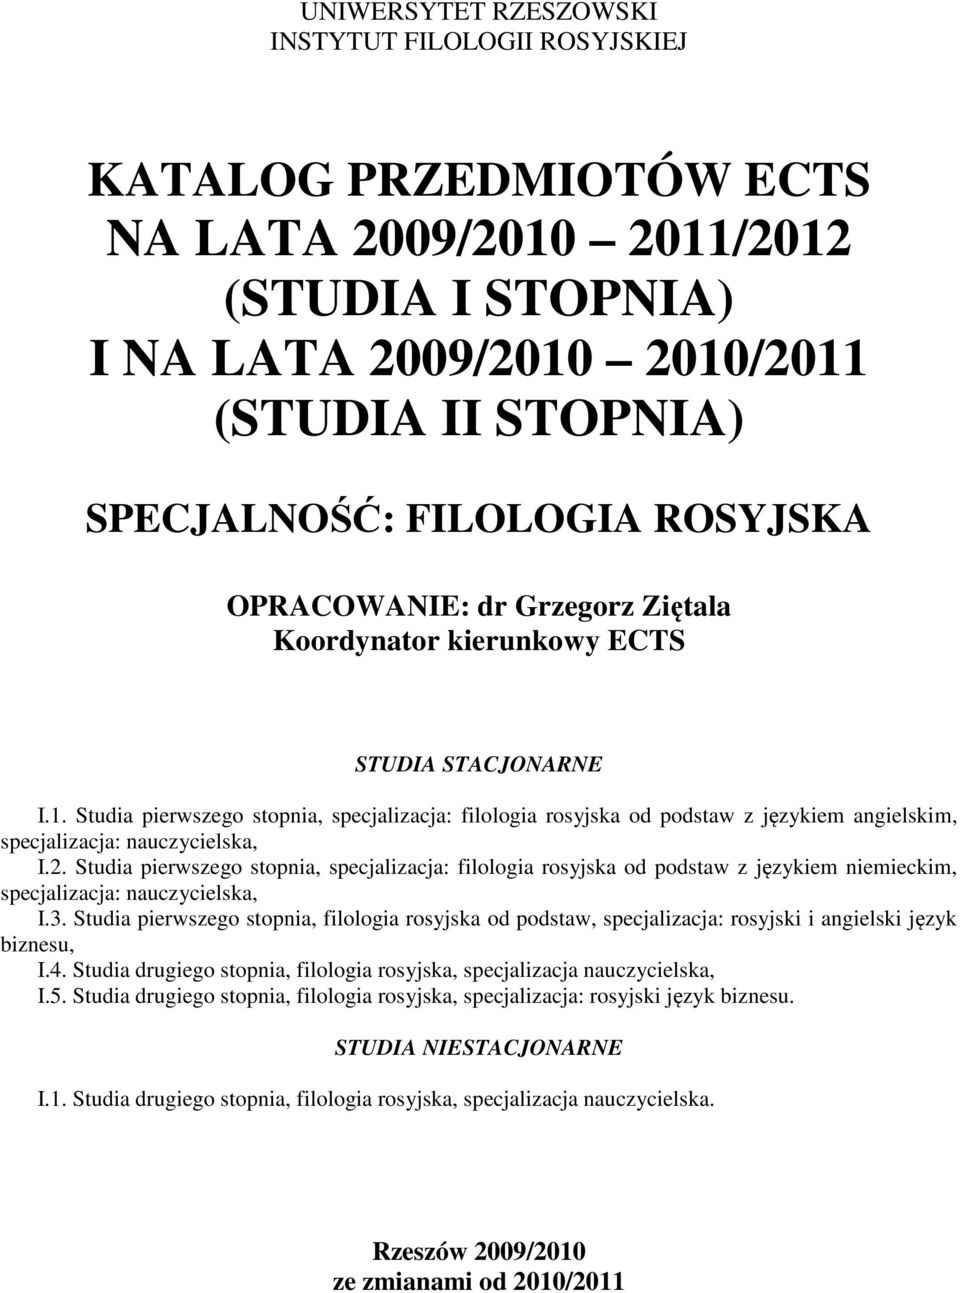 Studia pierwszego stopnia, specjalizacja: filologia rosyjska od podstaw z językiem angielskim, specjalizacja: nauczycielska, I.2.